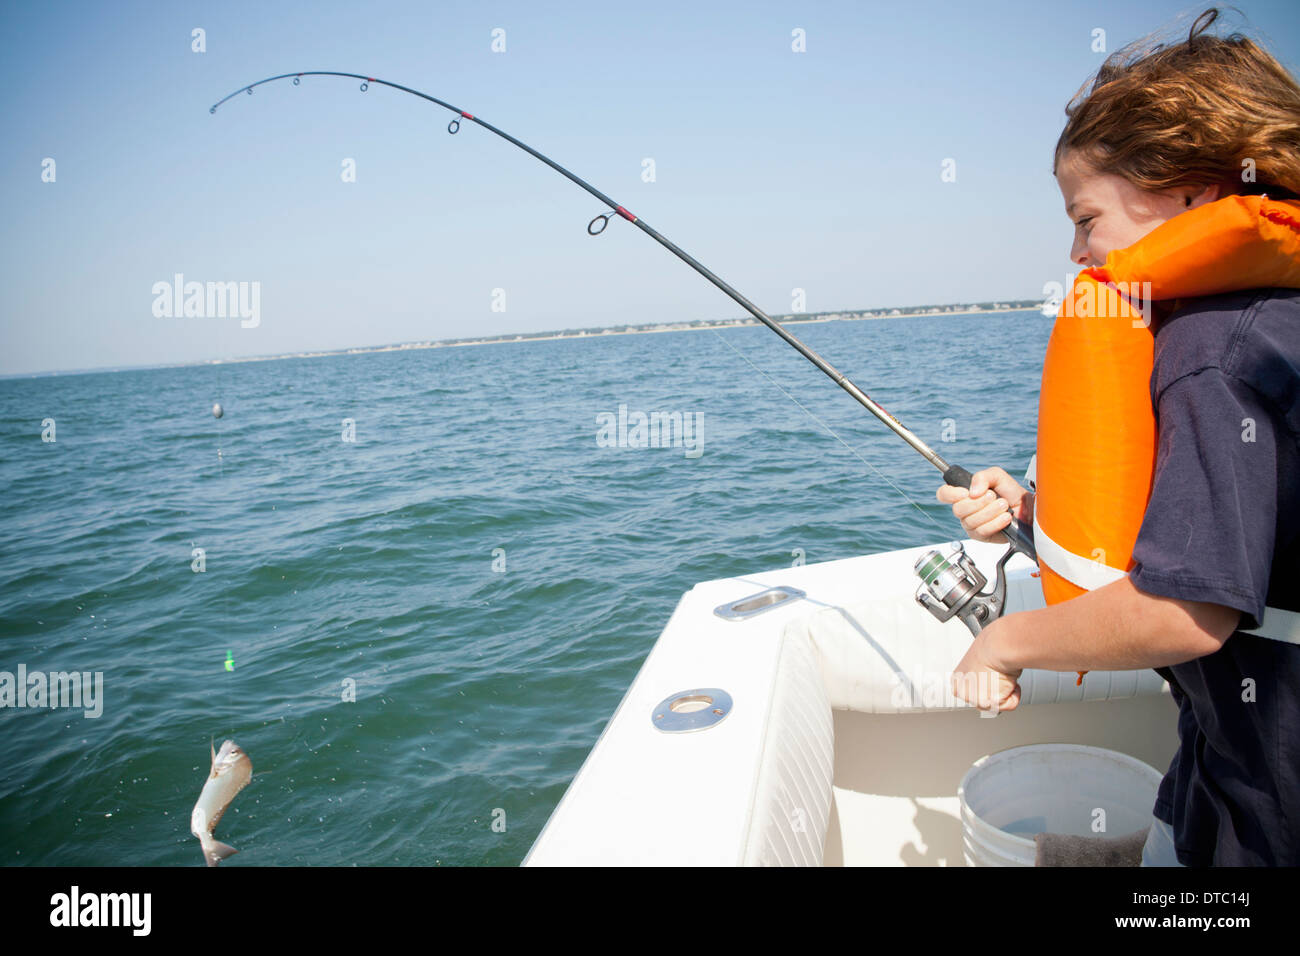 Boy catching fish from boat, Falmouth, Massachusetts, USA Stock Photo